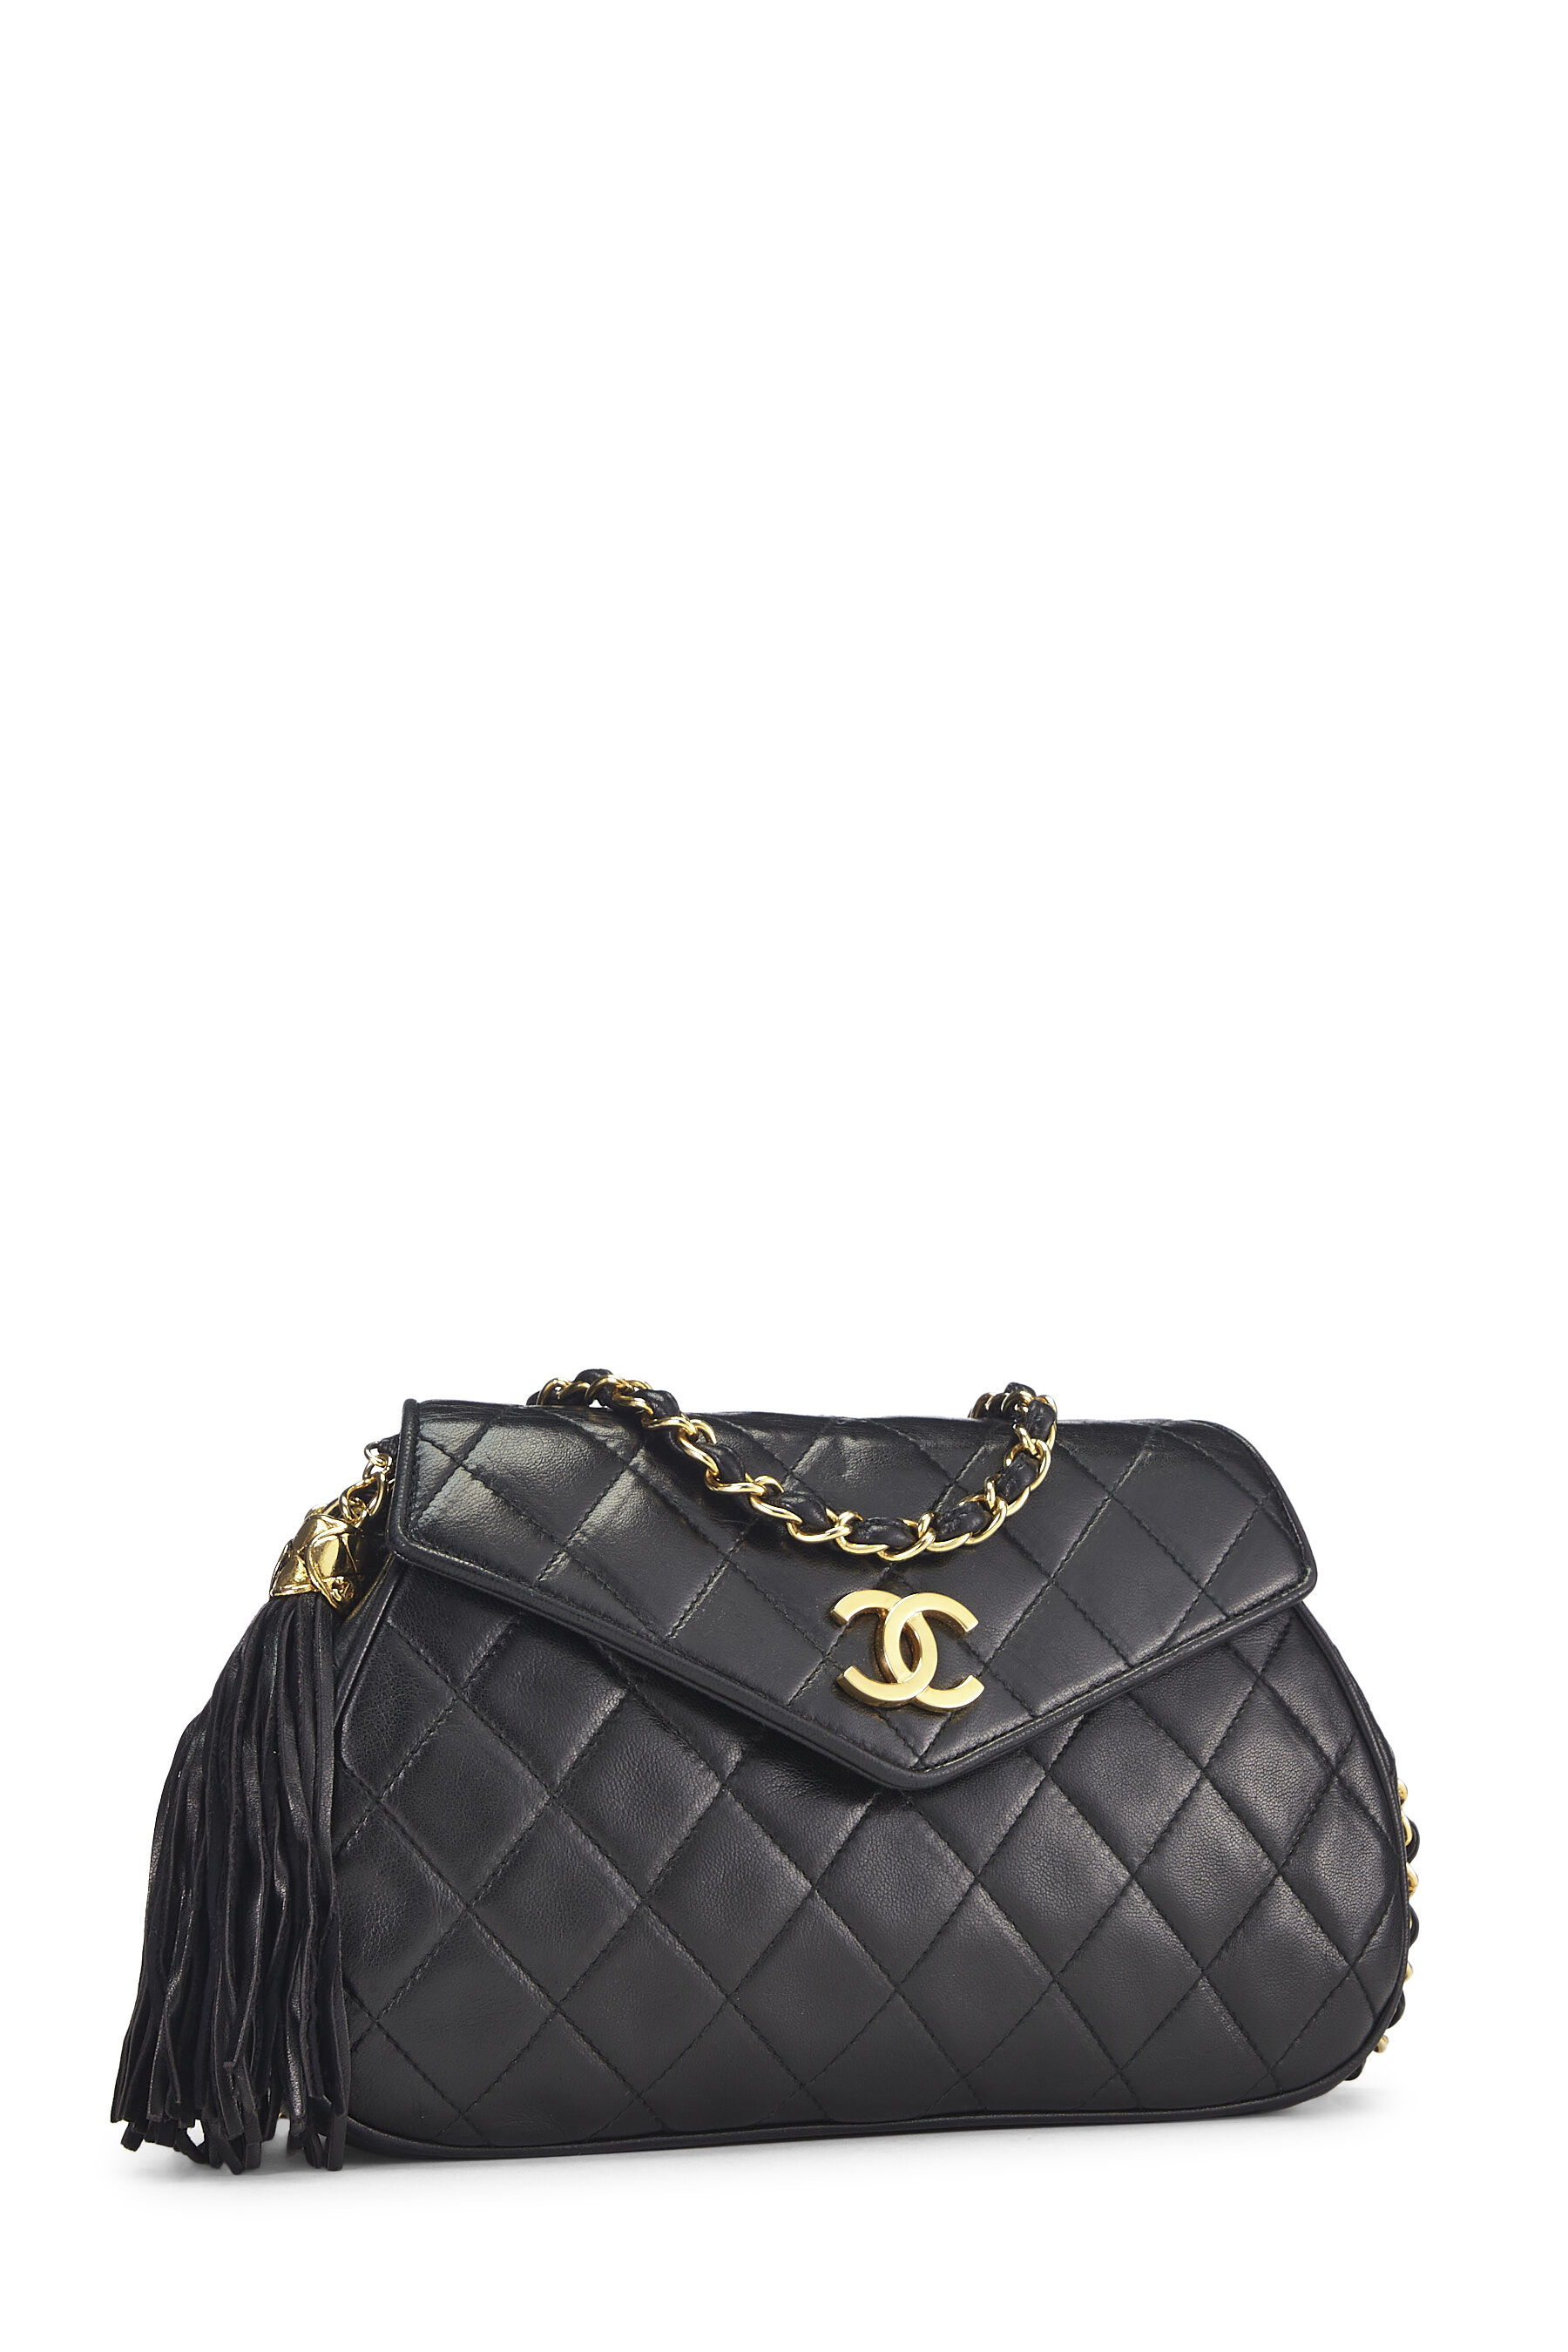 Chanel - Black Quilted Lambskin Envelope Flap Shoulder Bag